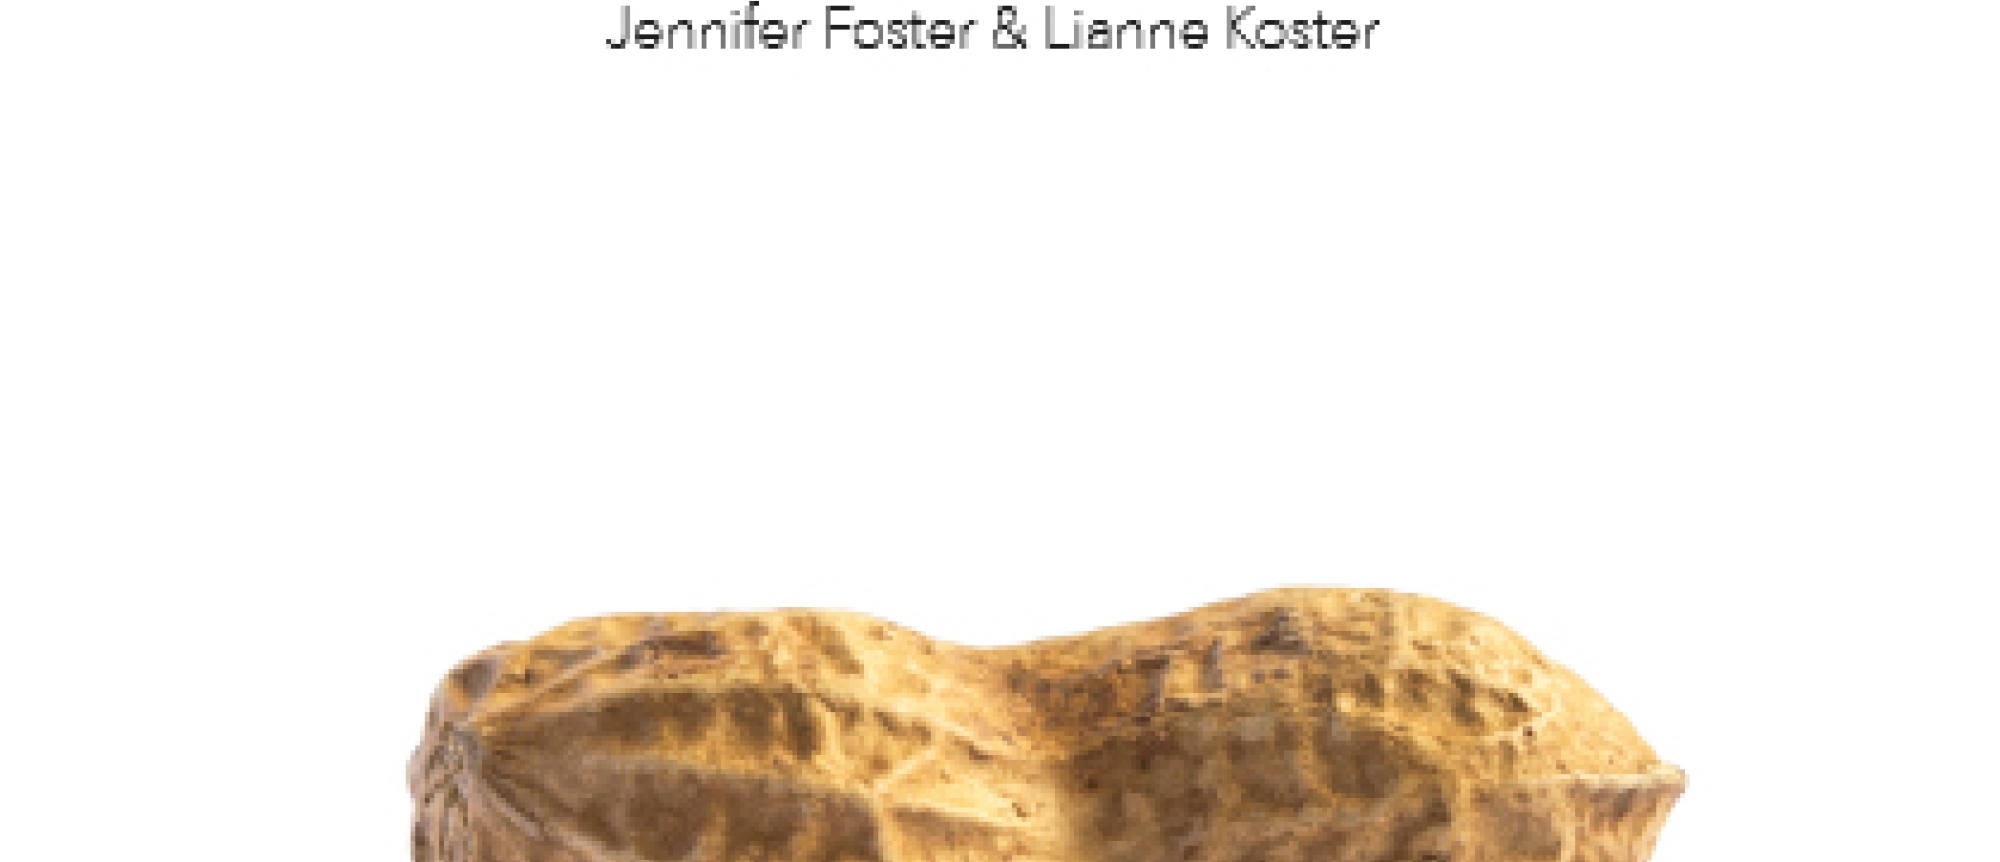 Pindakaasproeverij met Jennifer Foster en Lianne Koster